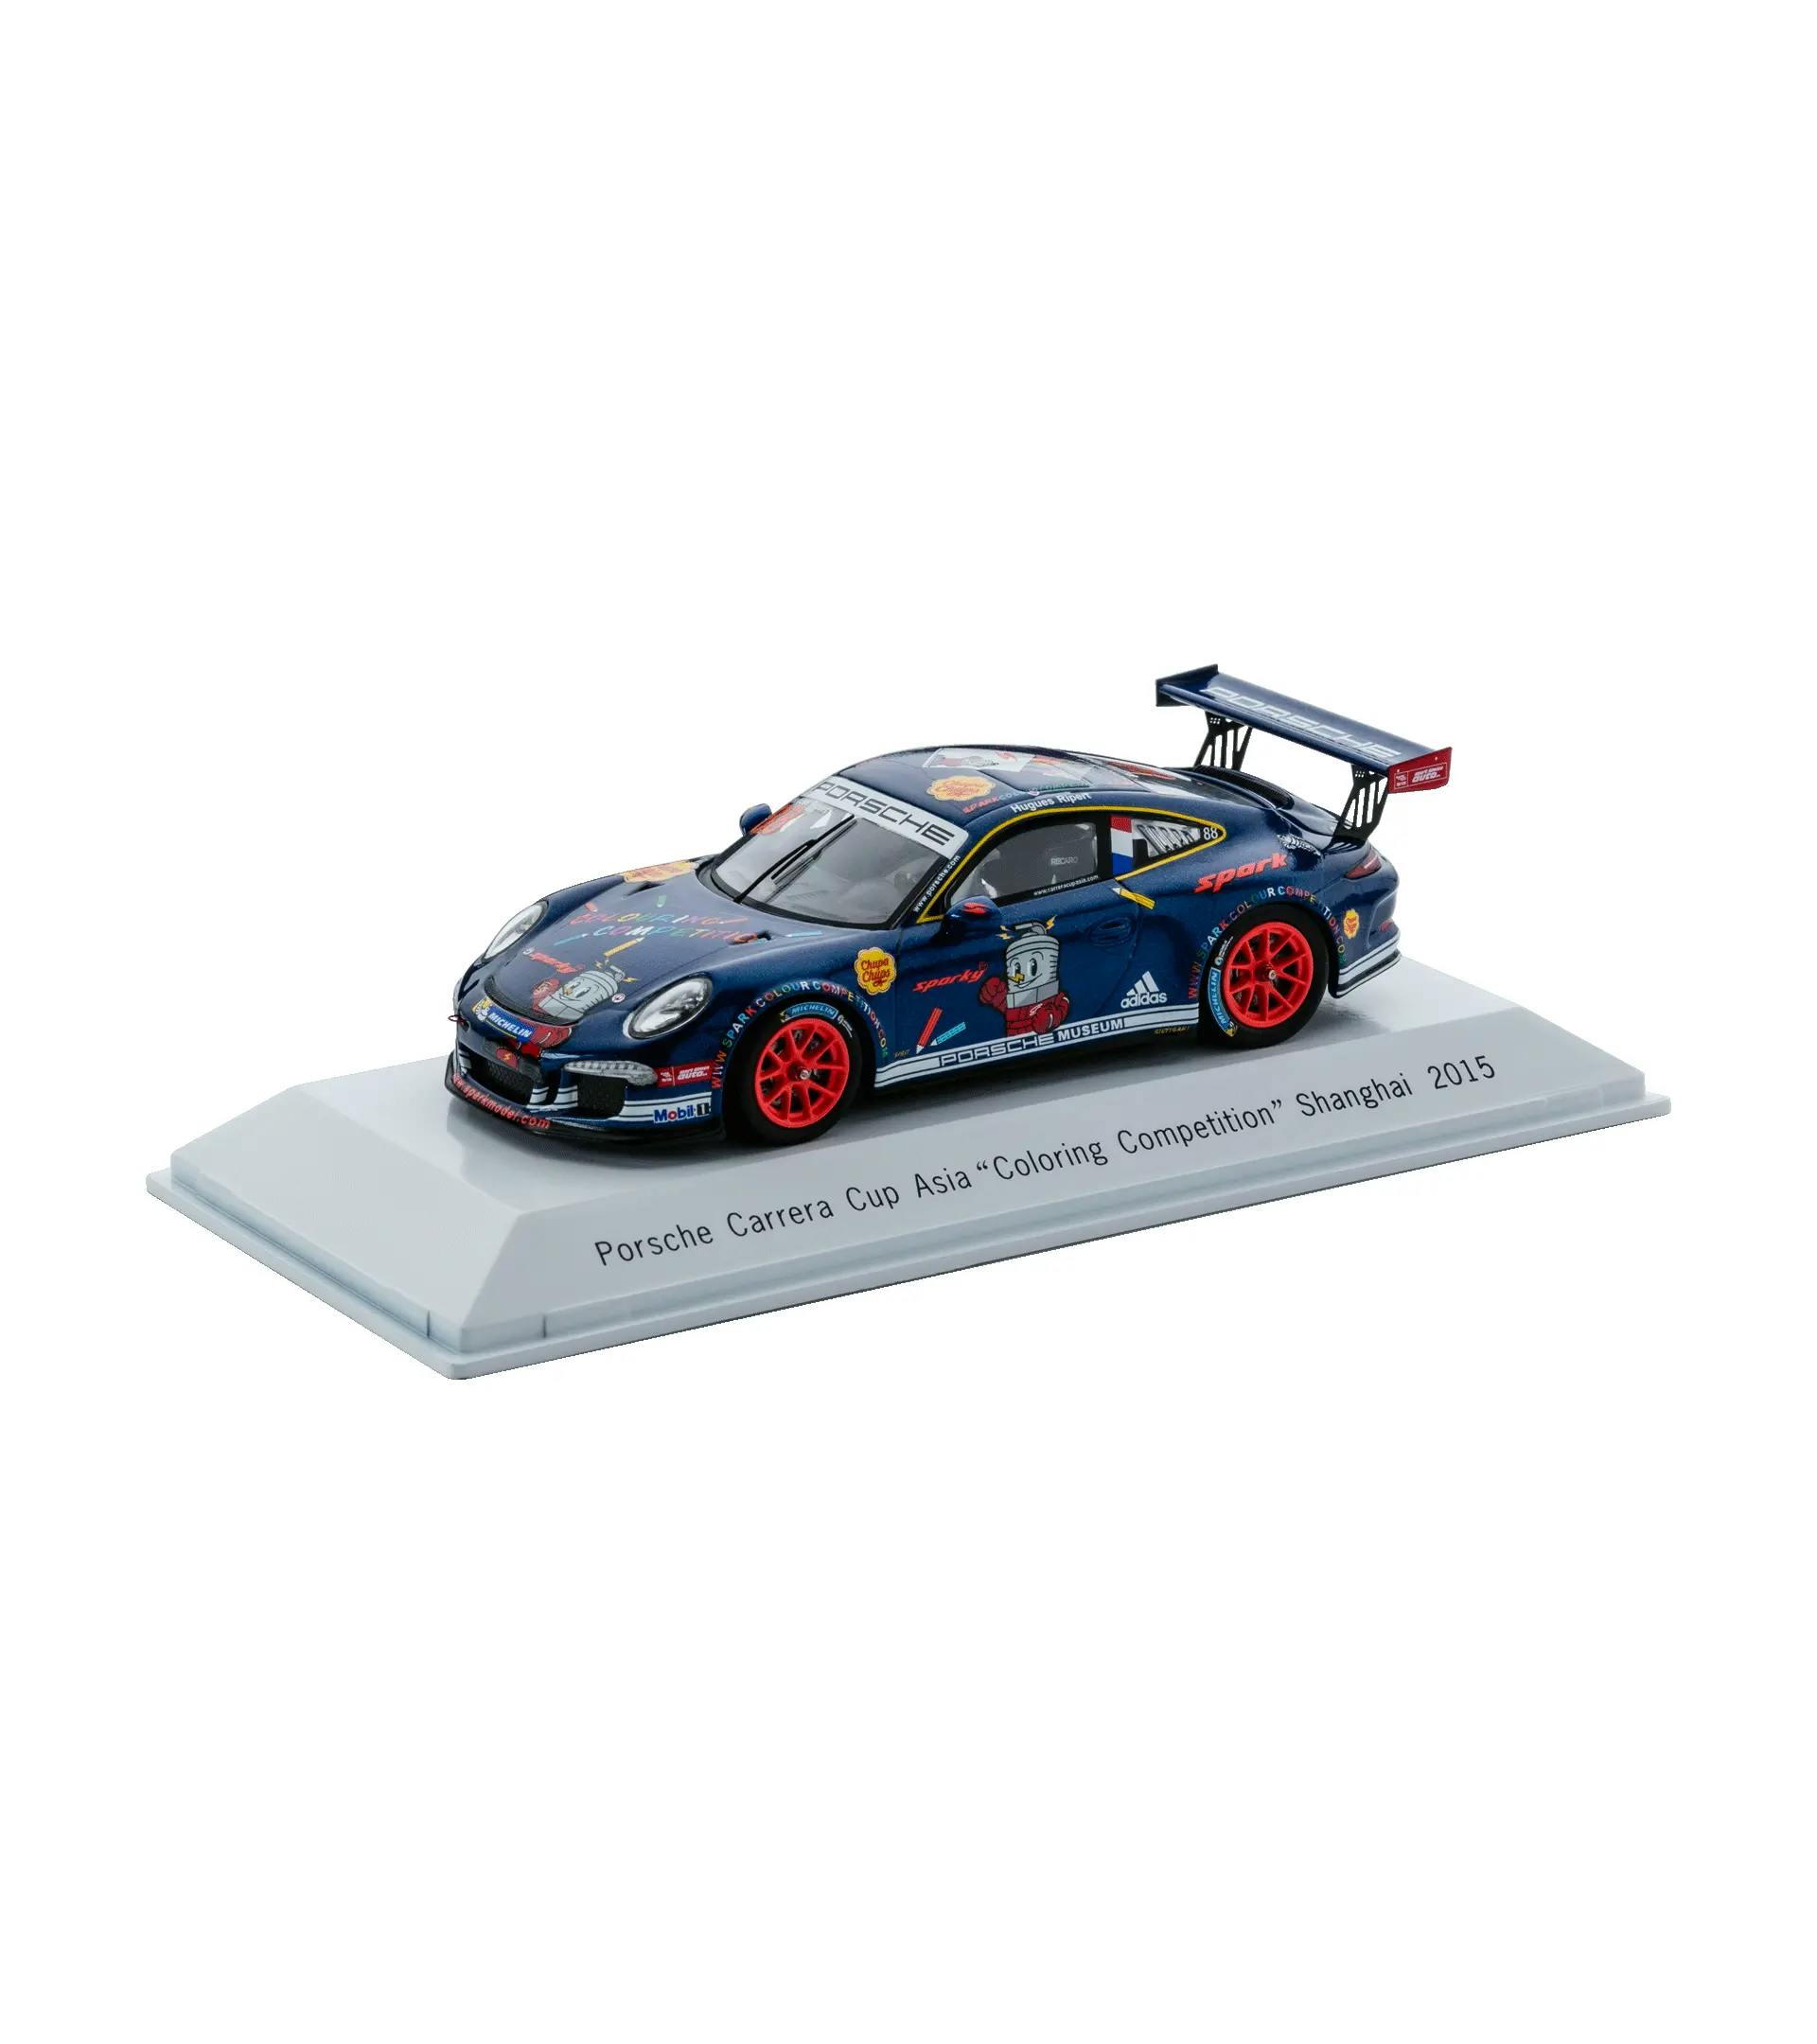 fecha límite Touhou irregular Porsche 911 GT3 Cup - Shanghai 2015 | PORSCHE SHOP